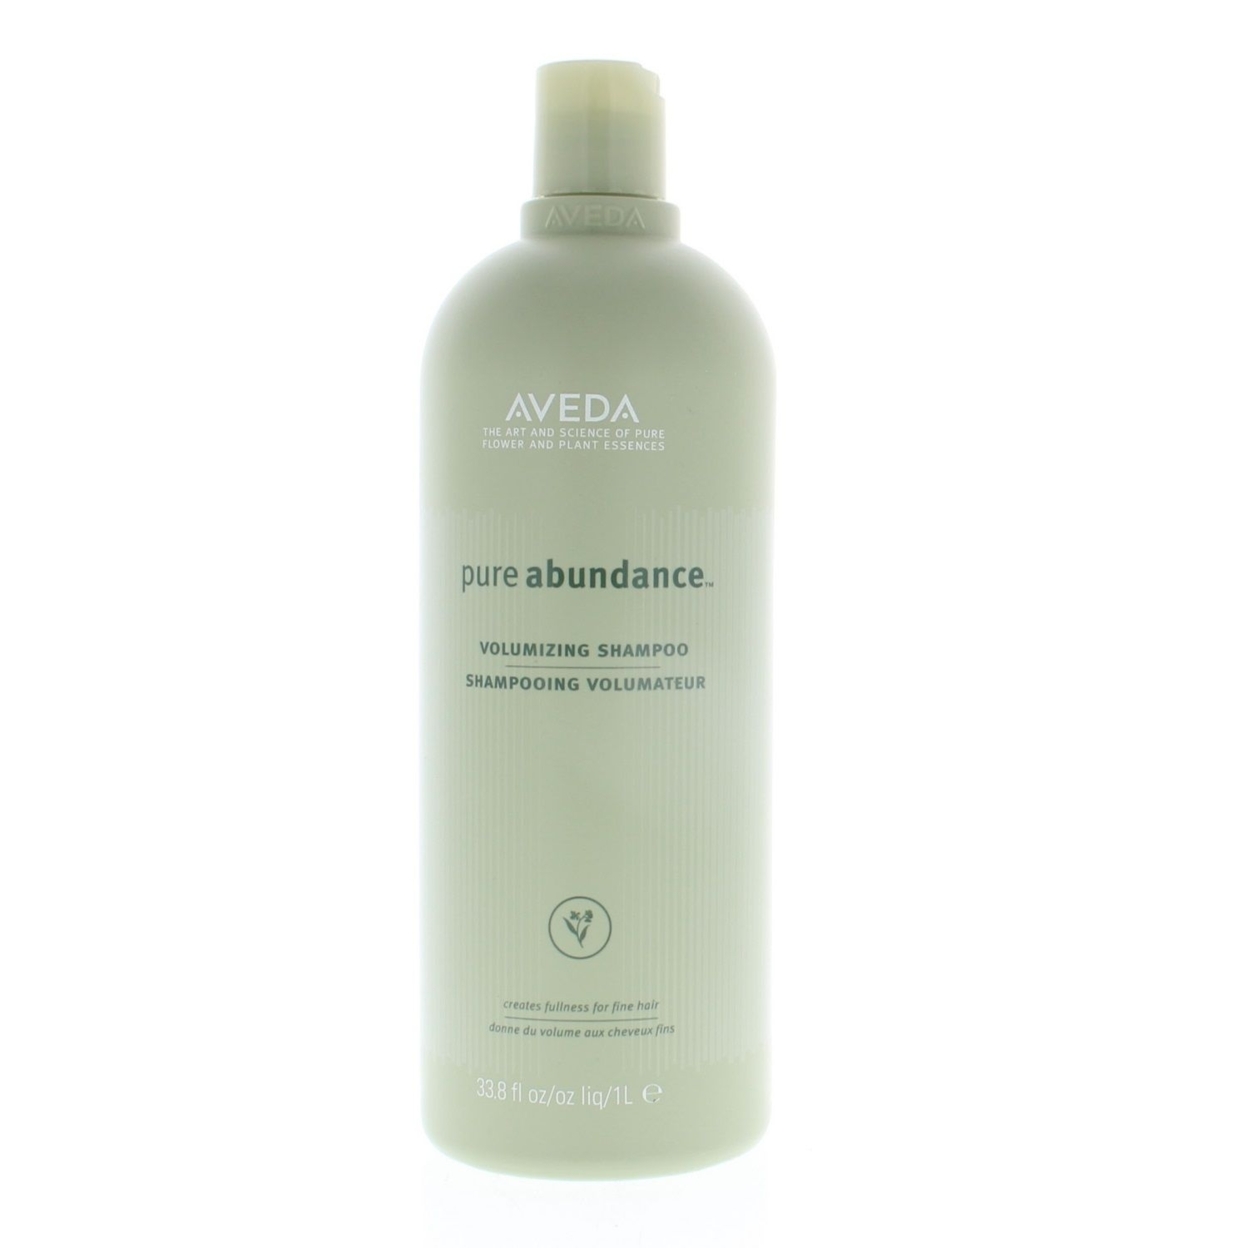 Aveda Pure Abundance Shampoo 33.8oz/1 Liter